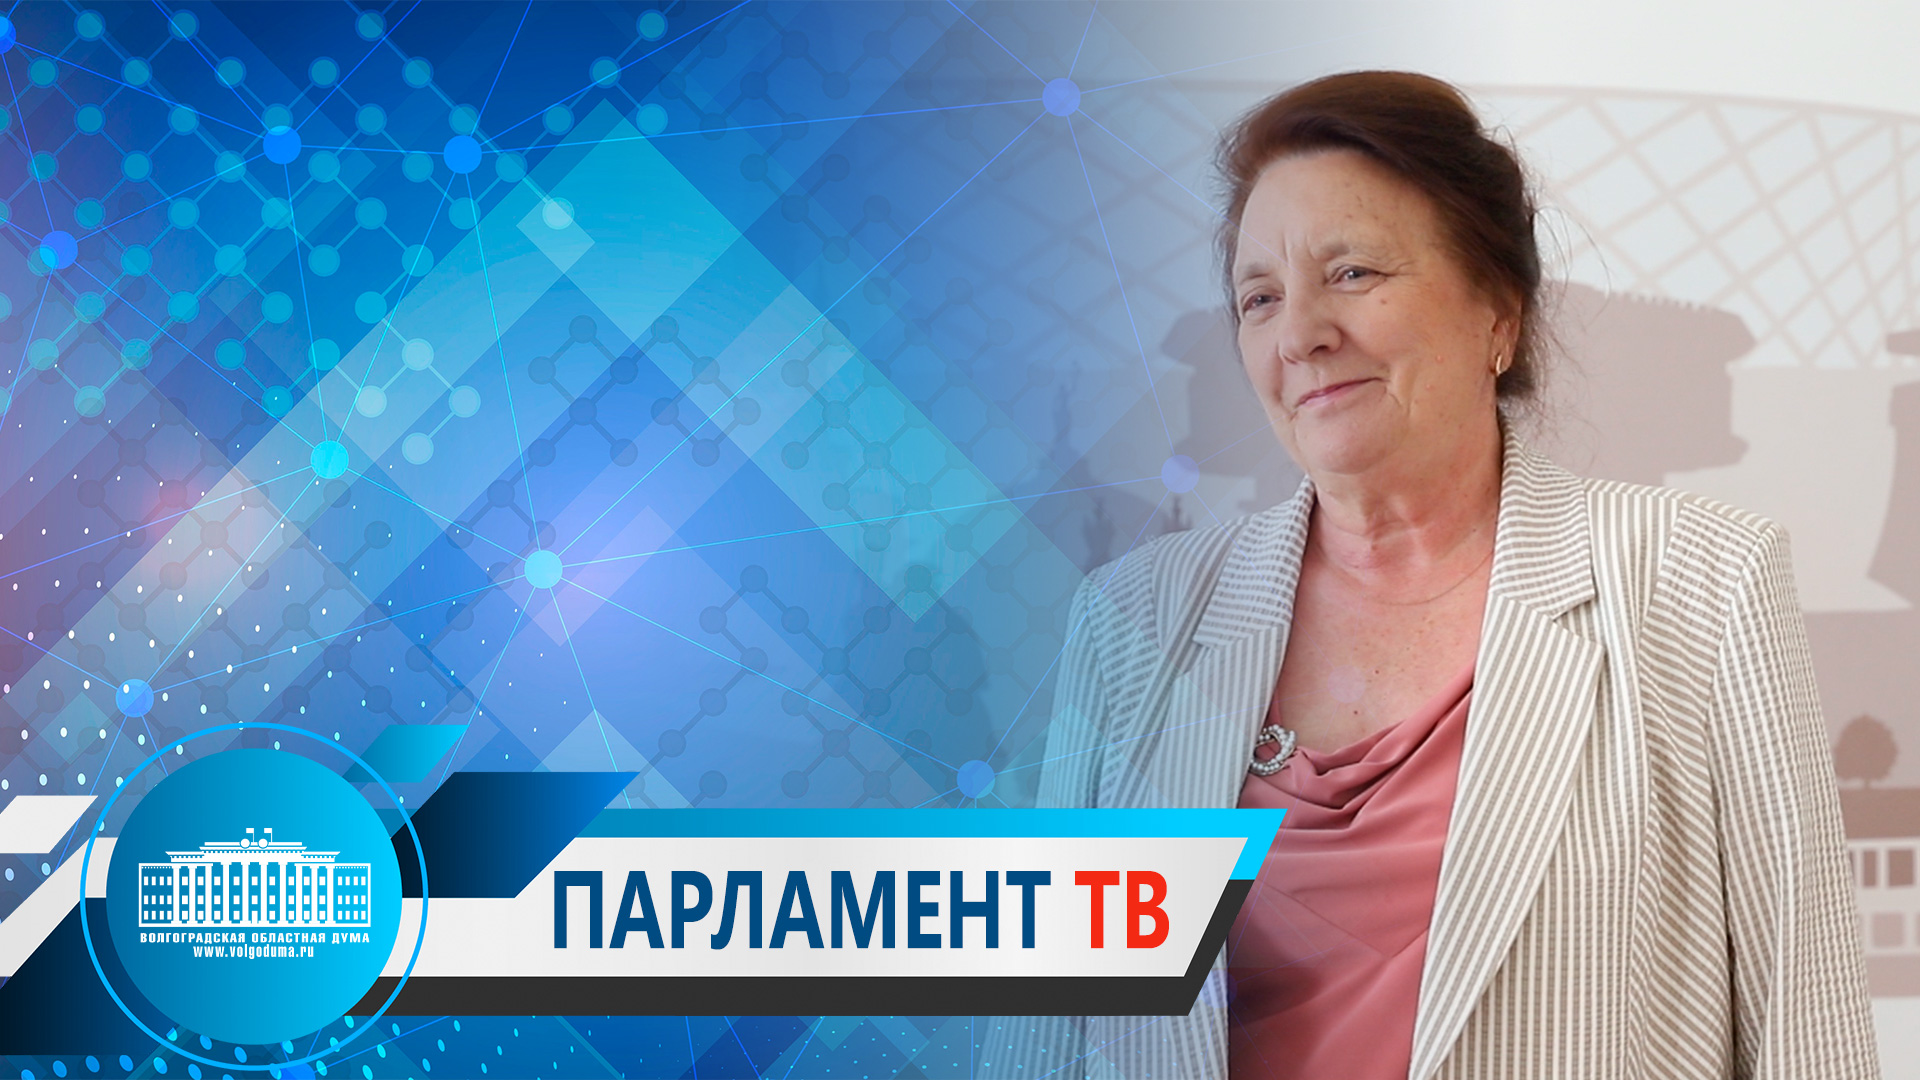 Тамара Головачева:"Совместное решение стоящих перед нами задач даст новый импульс развитию региона"